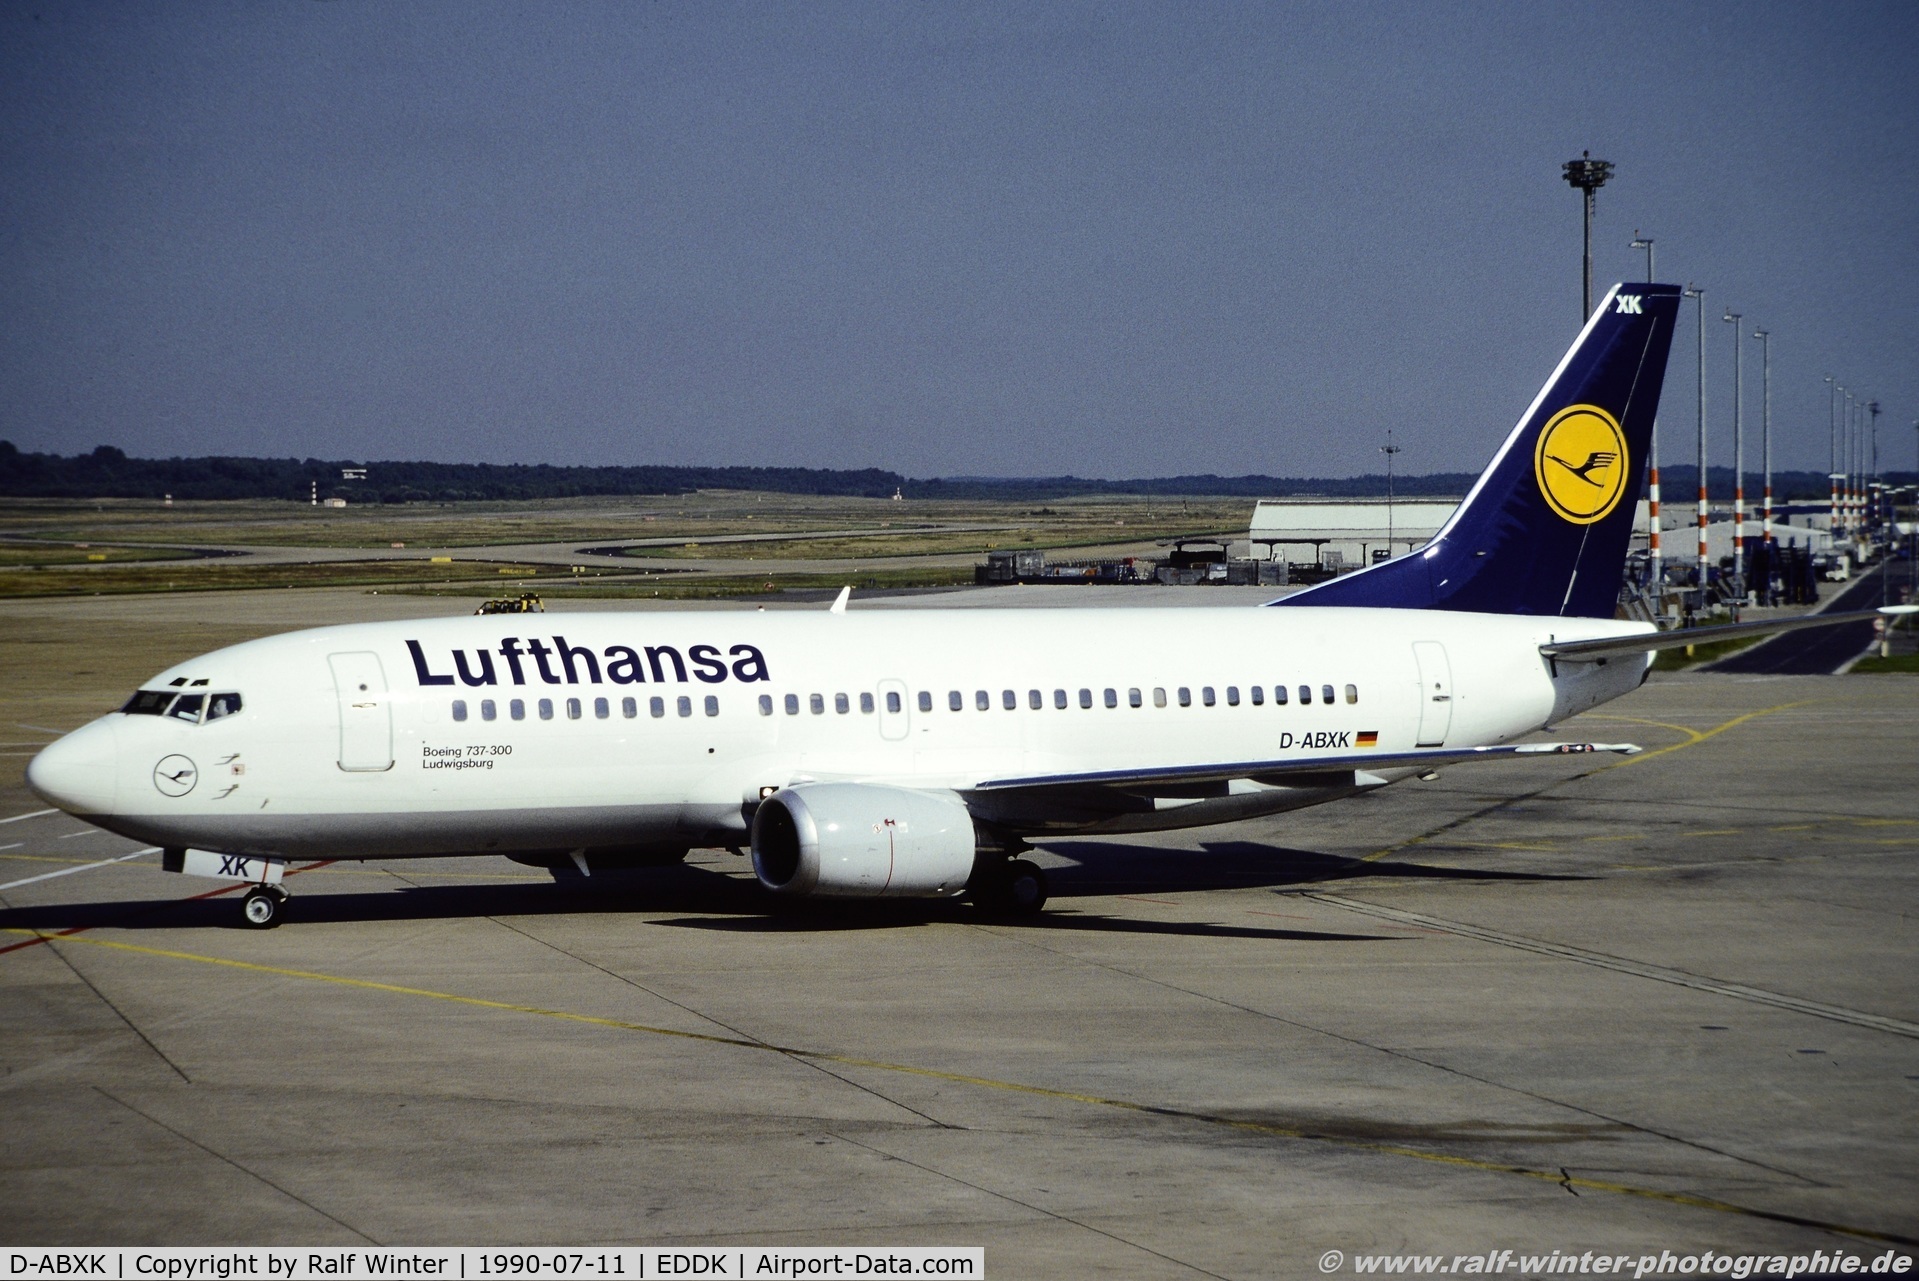 D-ABXK, 1986 Boeing 737-330 C/N 23530, Boeing 737-330 - LH DLH Lufthansa 'Ludwigsburg' - 23530 - D-ABXK - 11.07.1990 - CGN